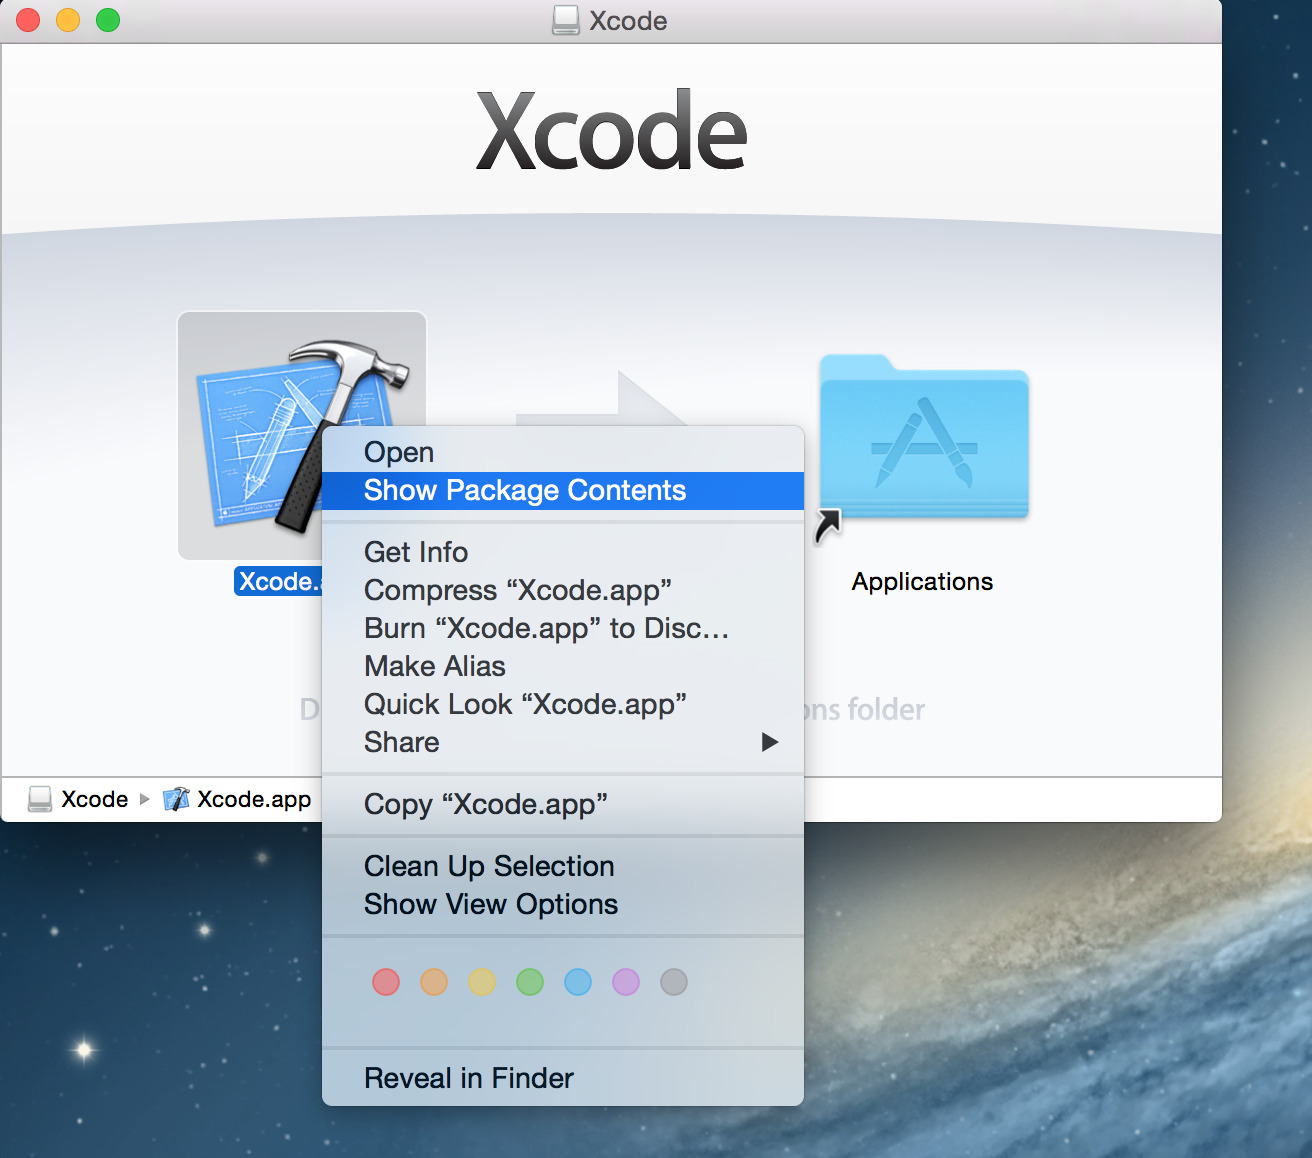 kodi for mac os x 10.6.8 troy